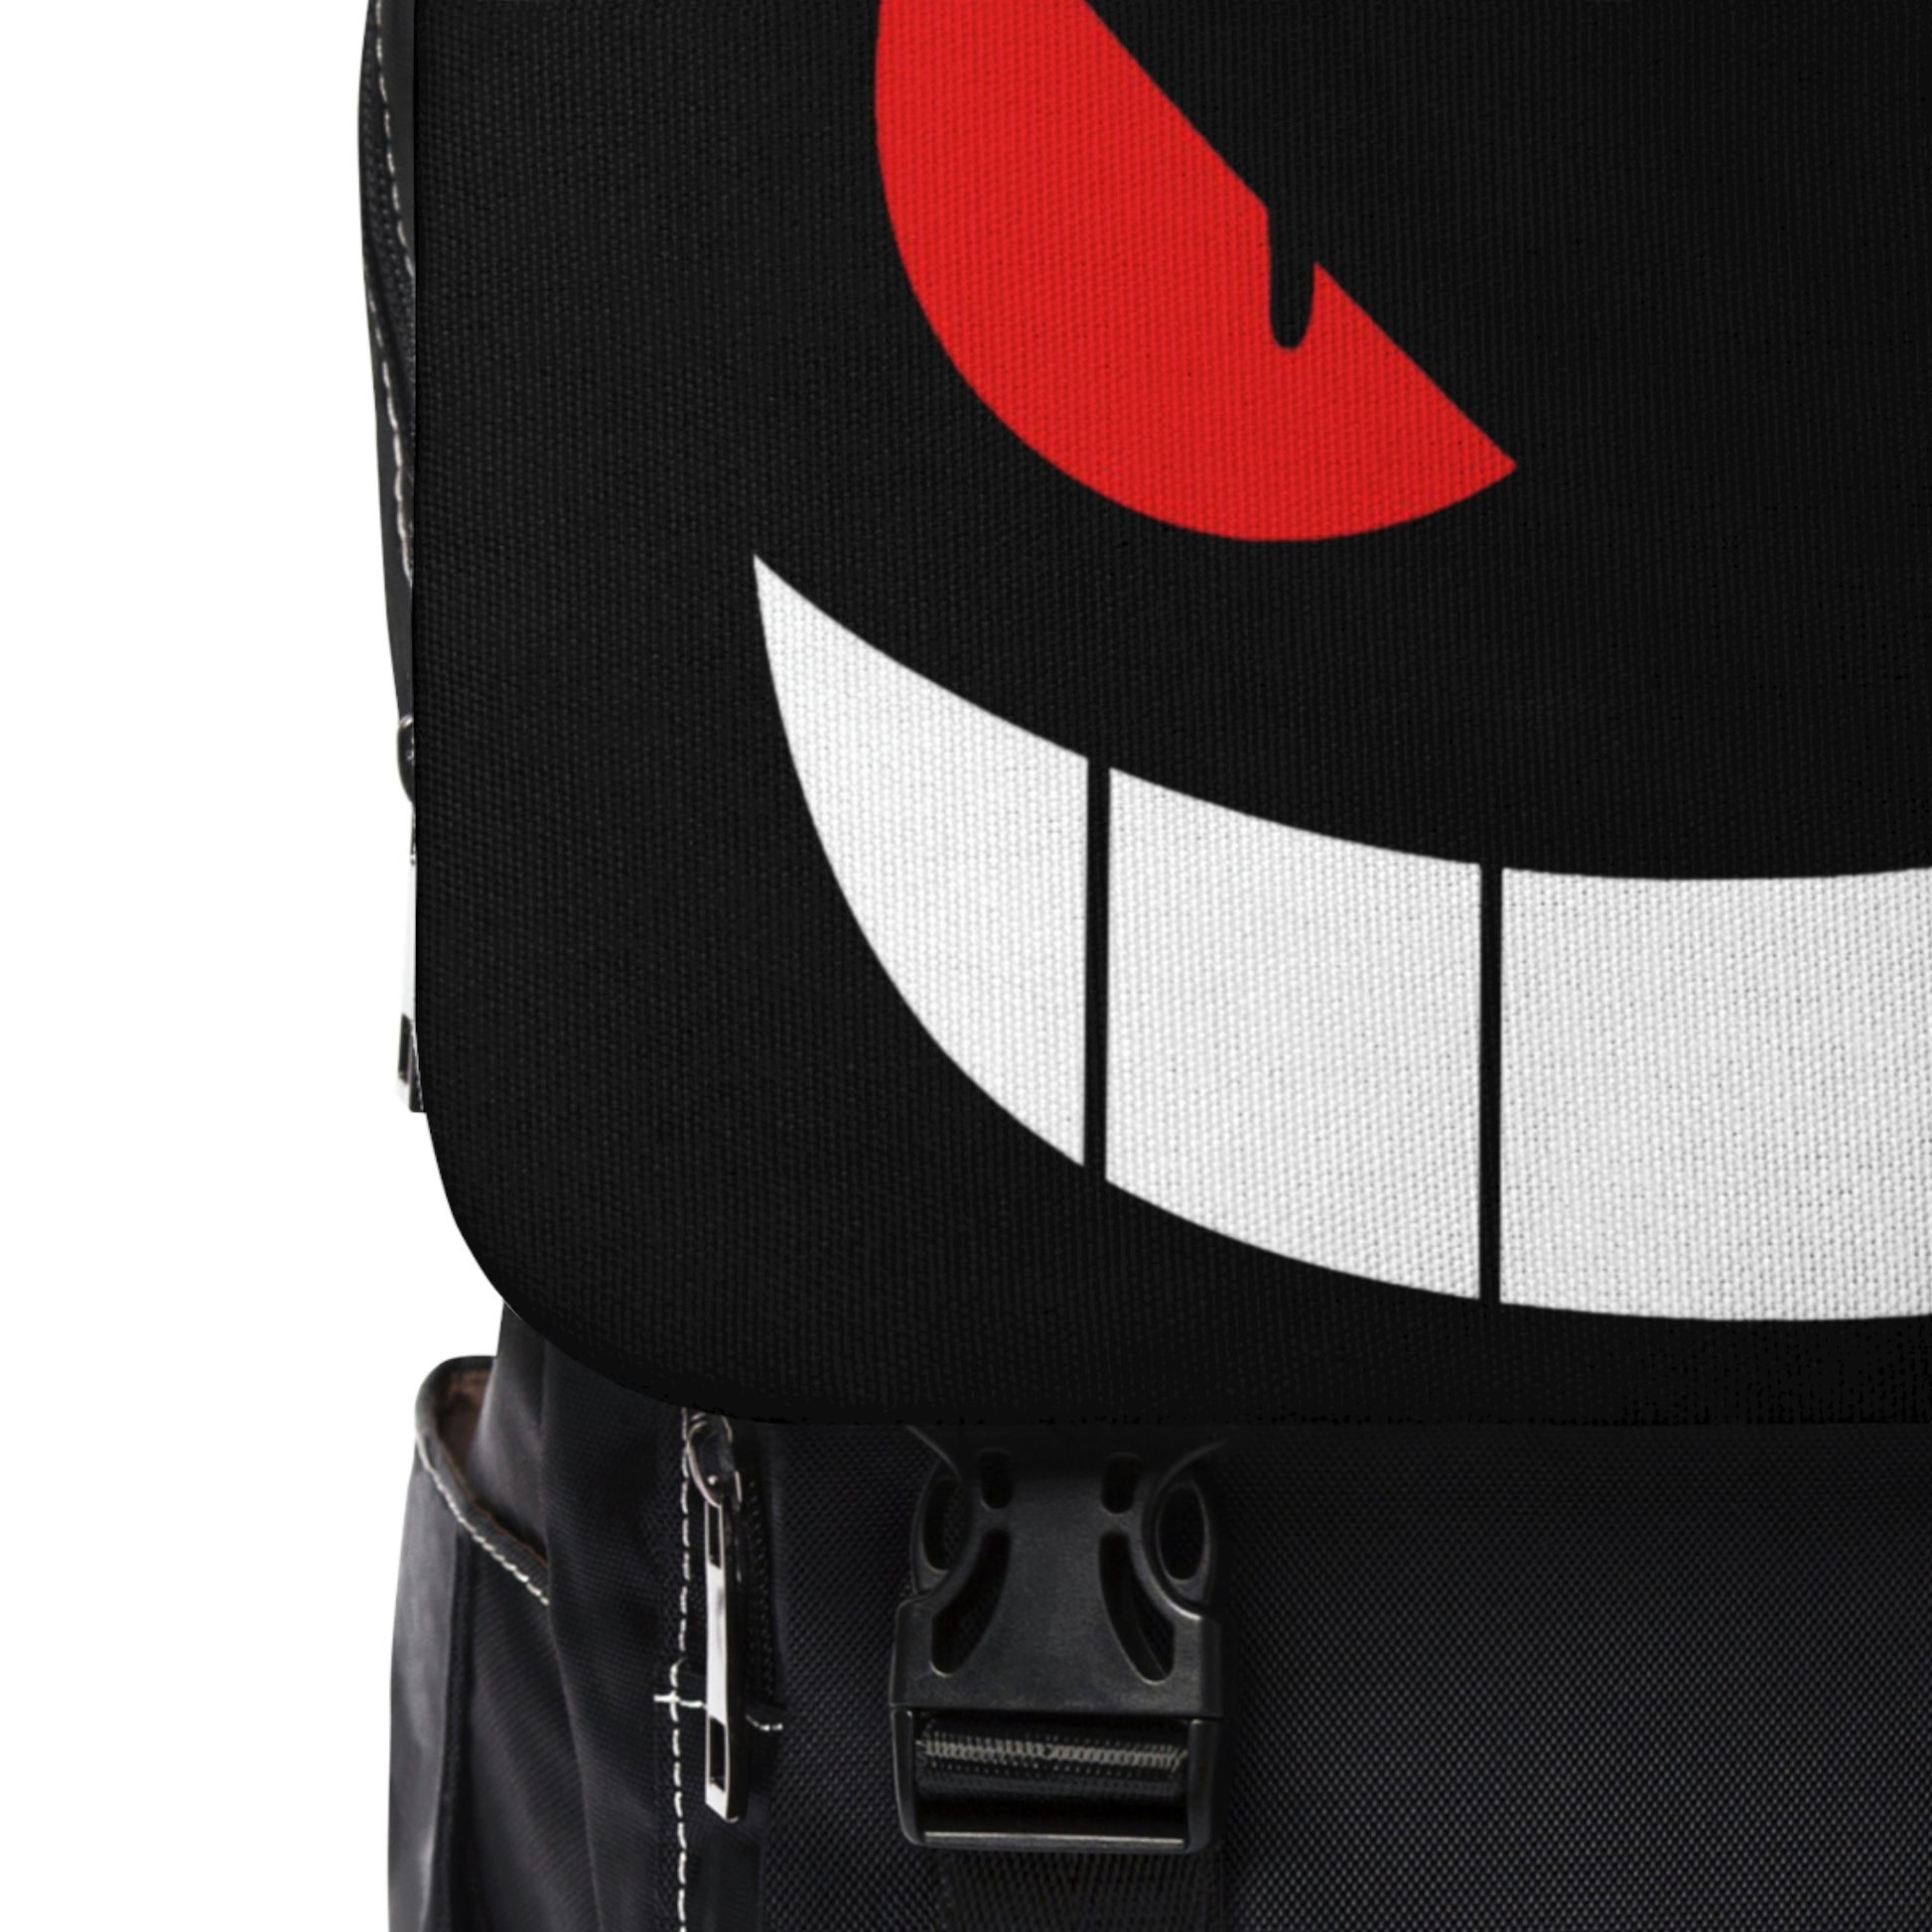 Anime - Streetwear - "SMILE" - Pokemon Gengar Backpack - Alpha Weebs